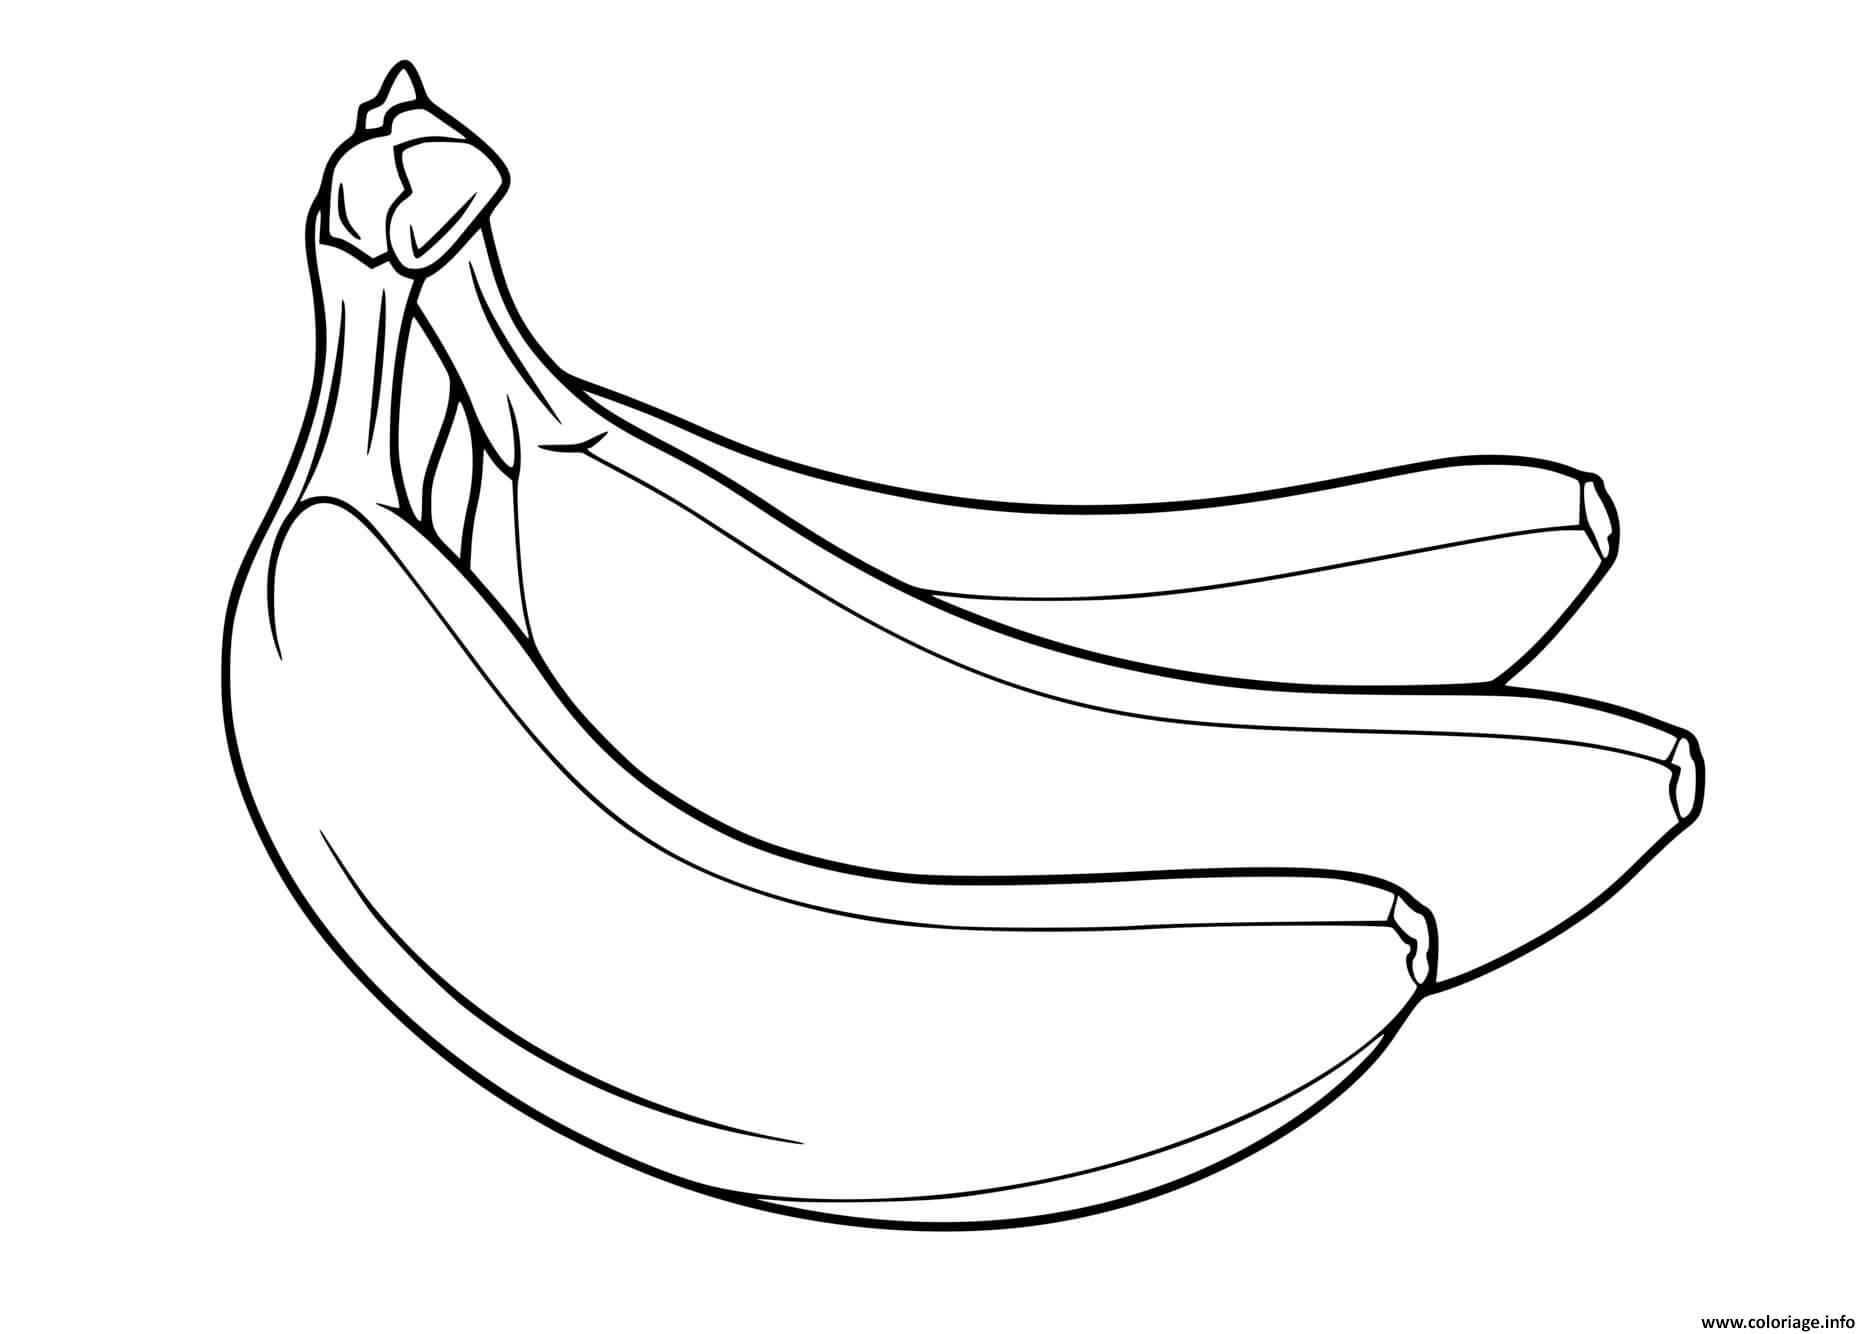 Dessin banane fruit maternelle Coloriage Gratuit à Imprimer